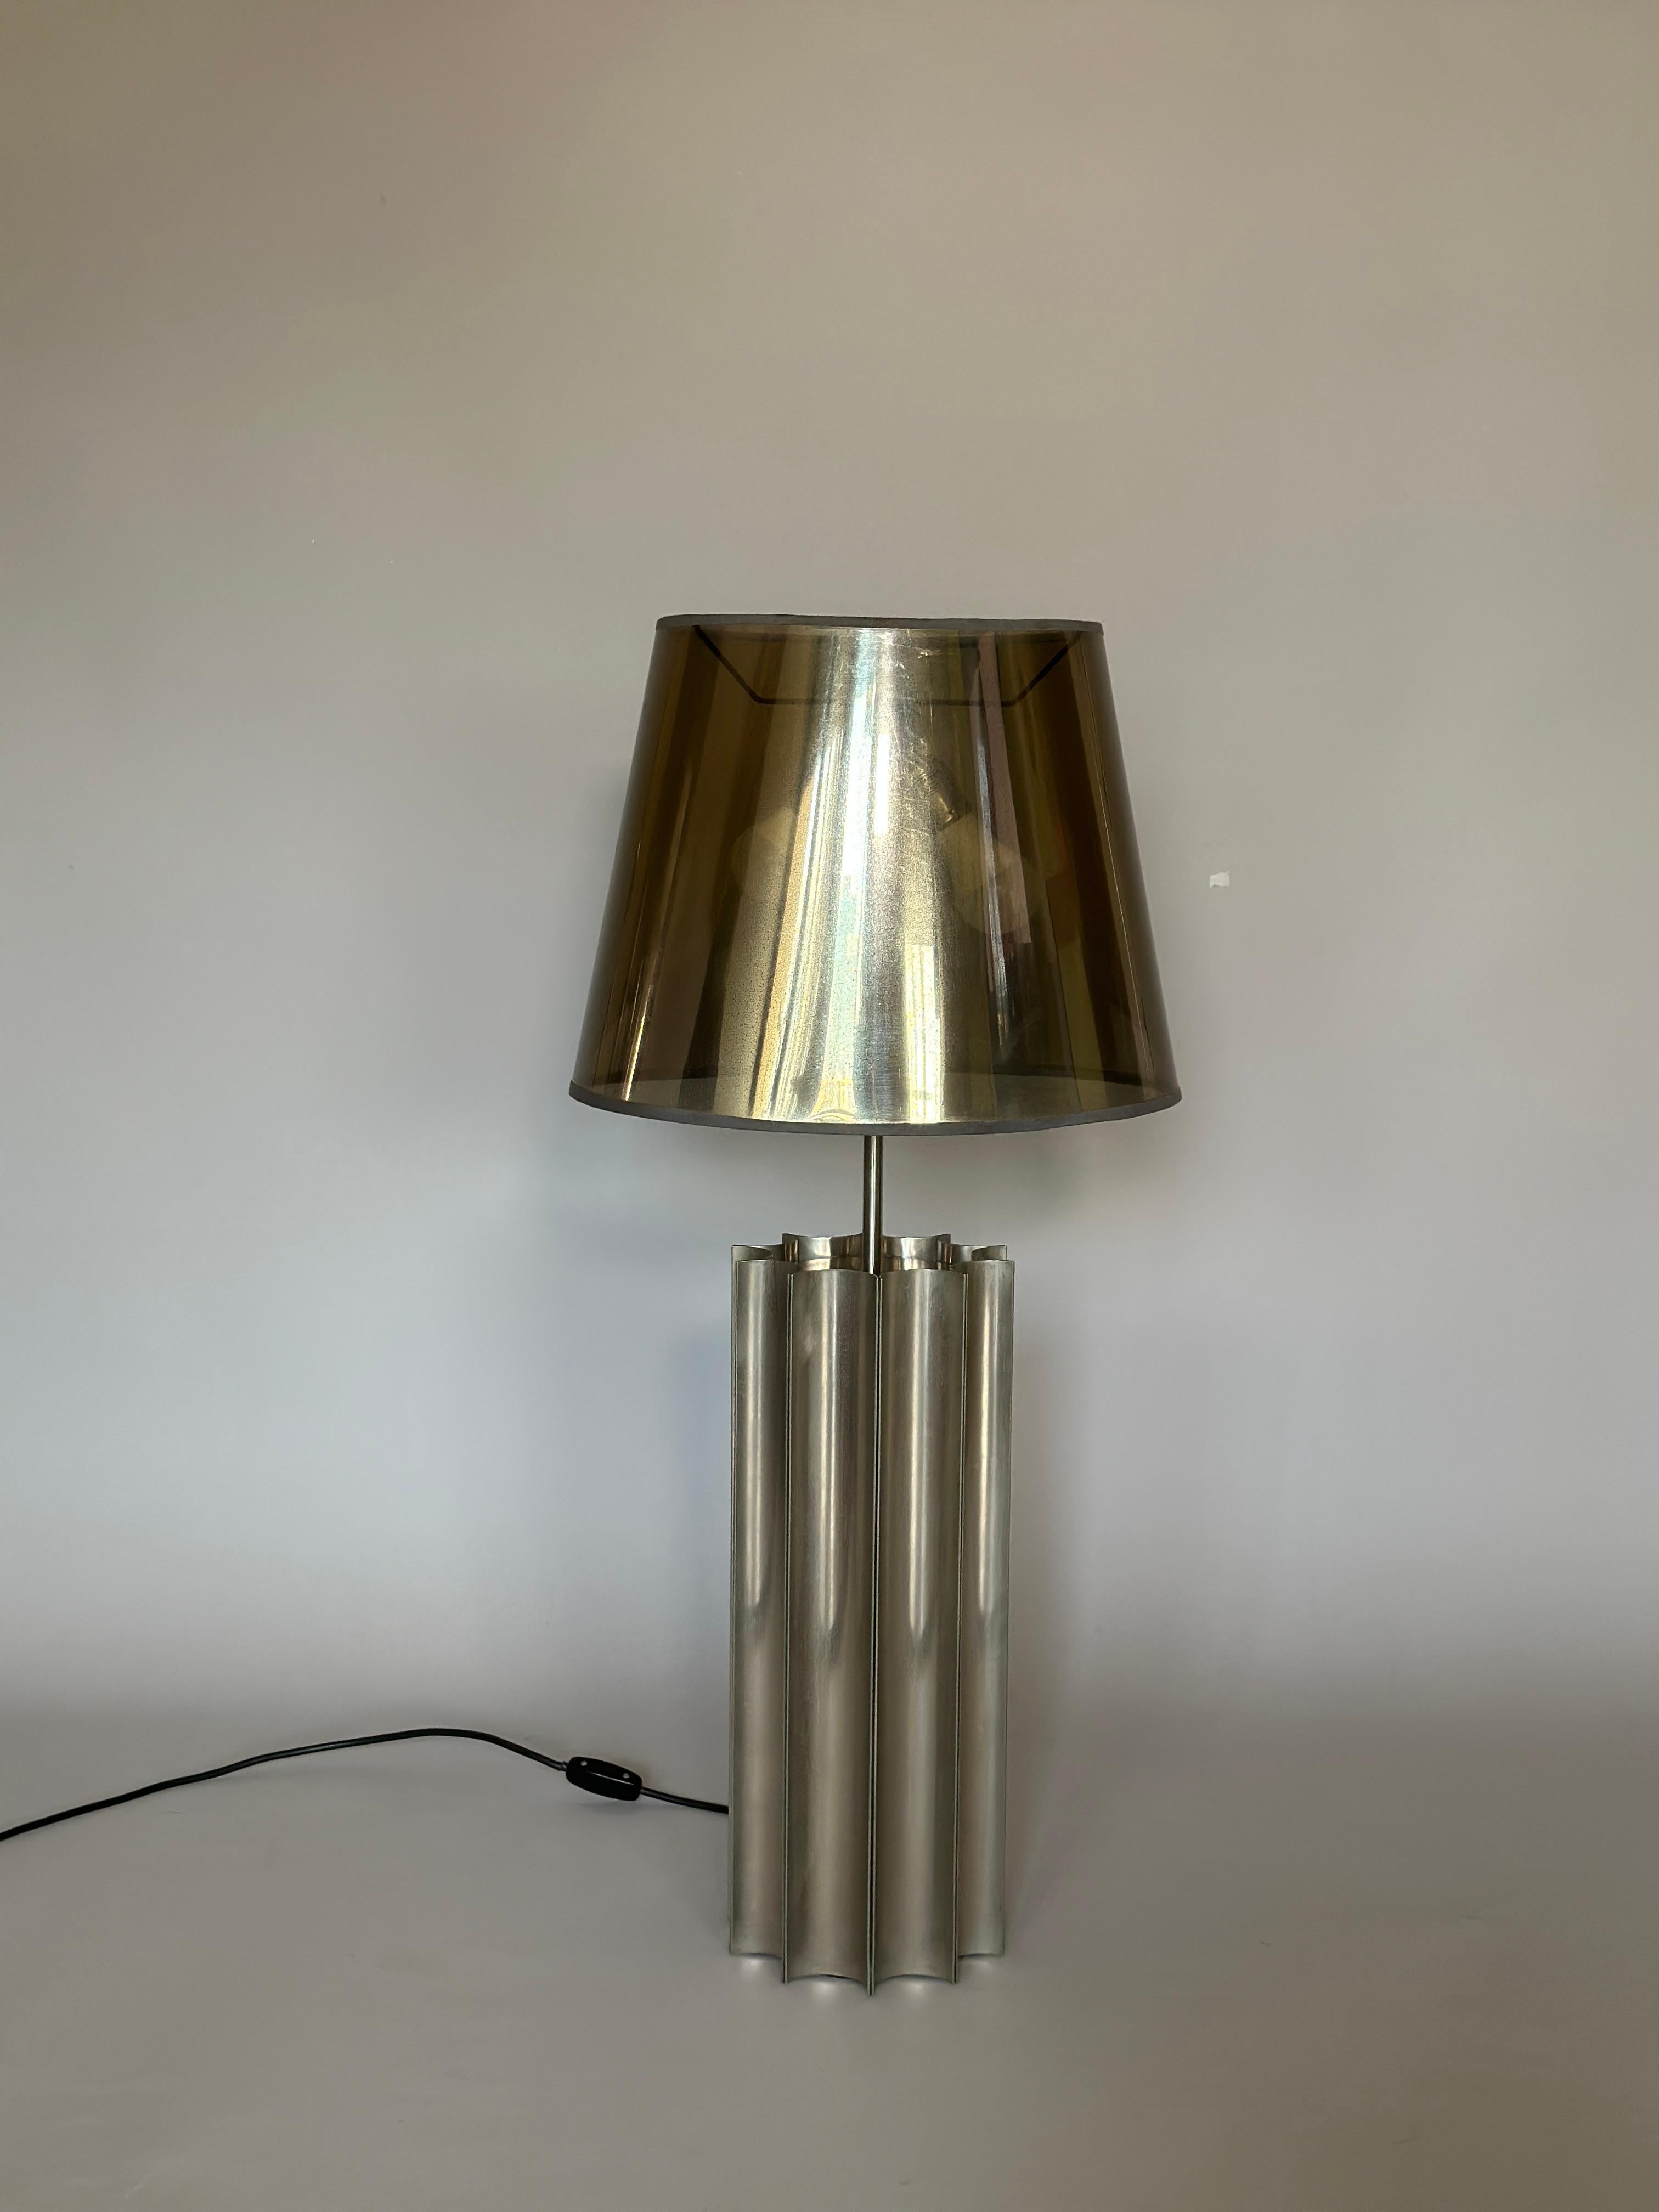 Lampe de table Ingo Maurer 1960s. Fabriquée en Allemagne, base en métal chromé et abat-jour en plastique.